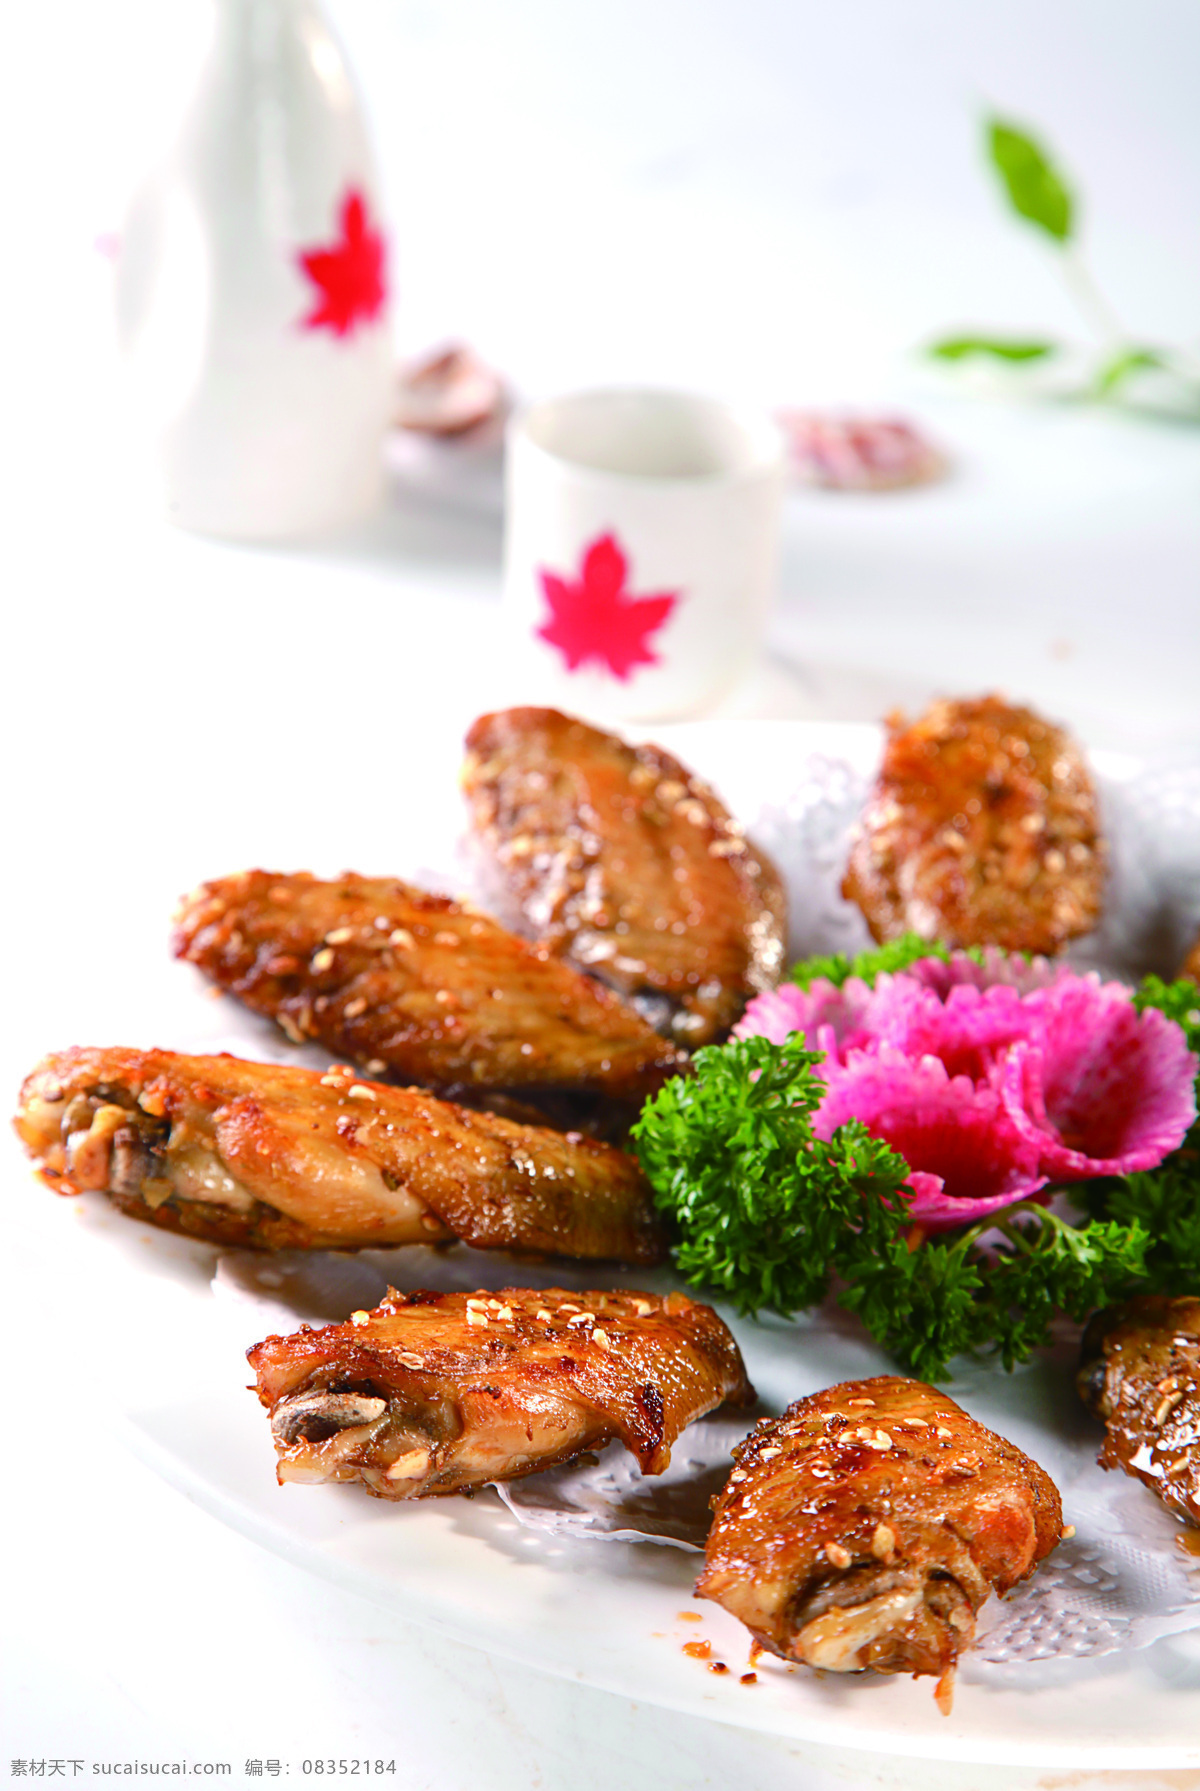 秘制烤鸡翅 秘制烤翅 烤鸡翅 烧烤 美食 食品 中国菜 餐饮美食 传统美食